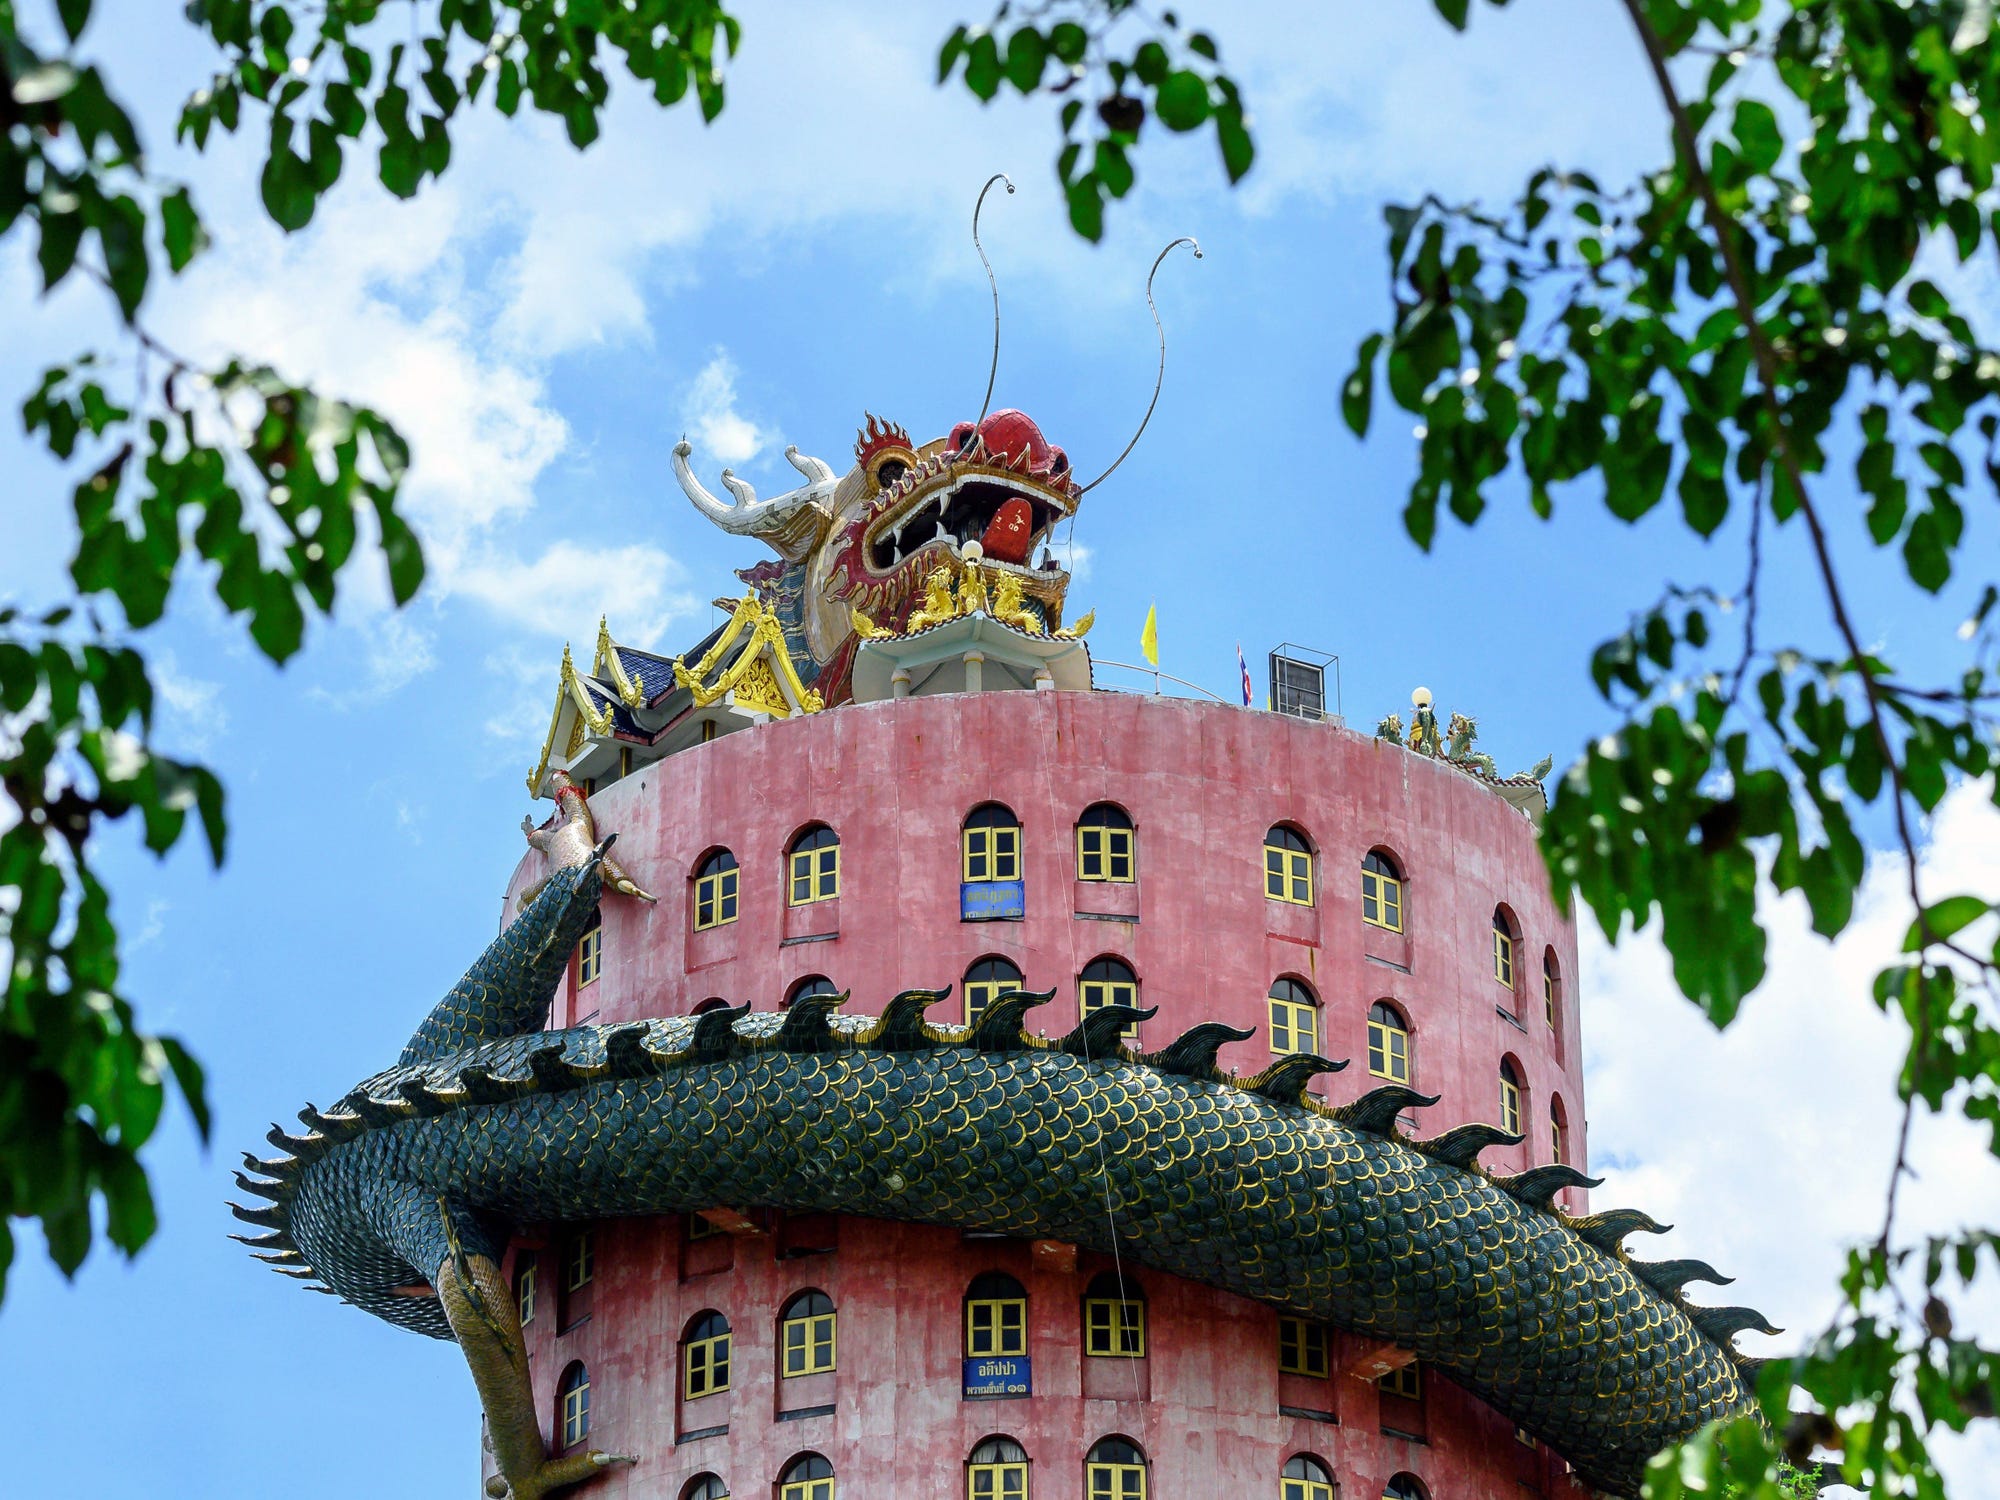 Khám phá rồng khổng lồ quấn quanh ngôi chùa hồng nổi tiếng ở Thái Lan- Ảnh 3.